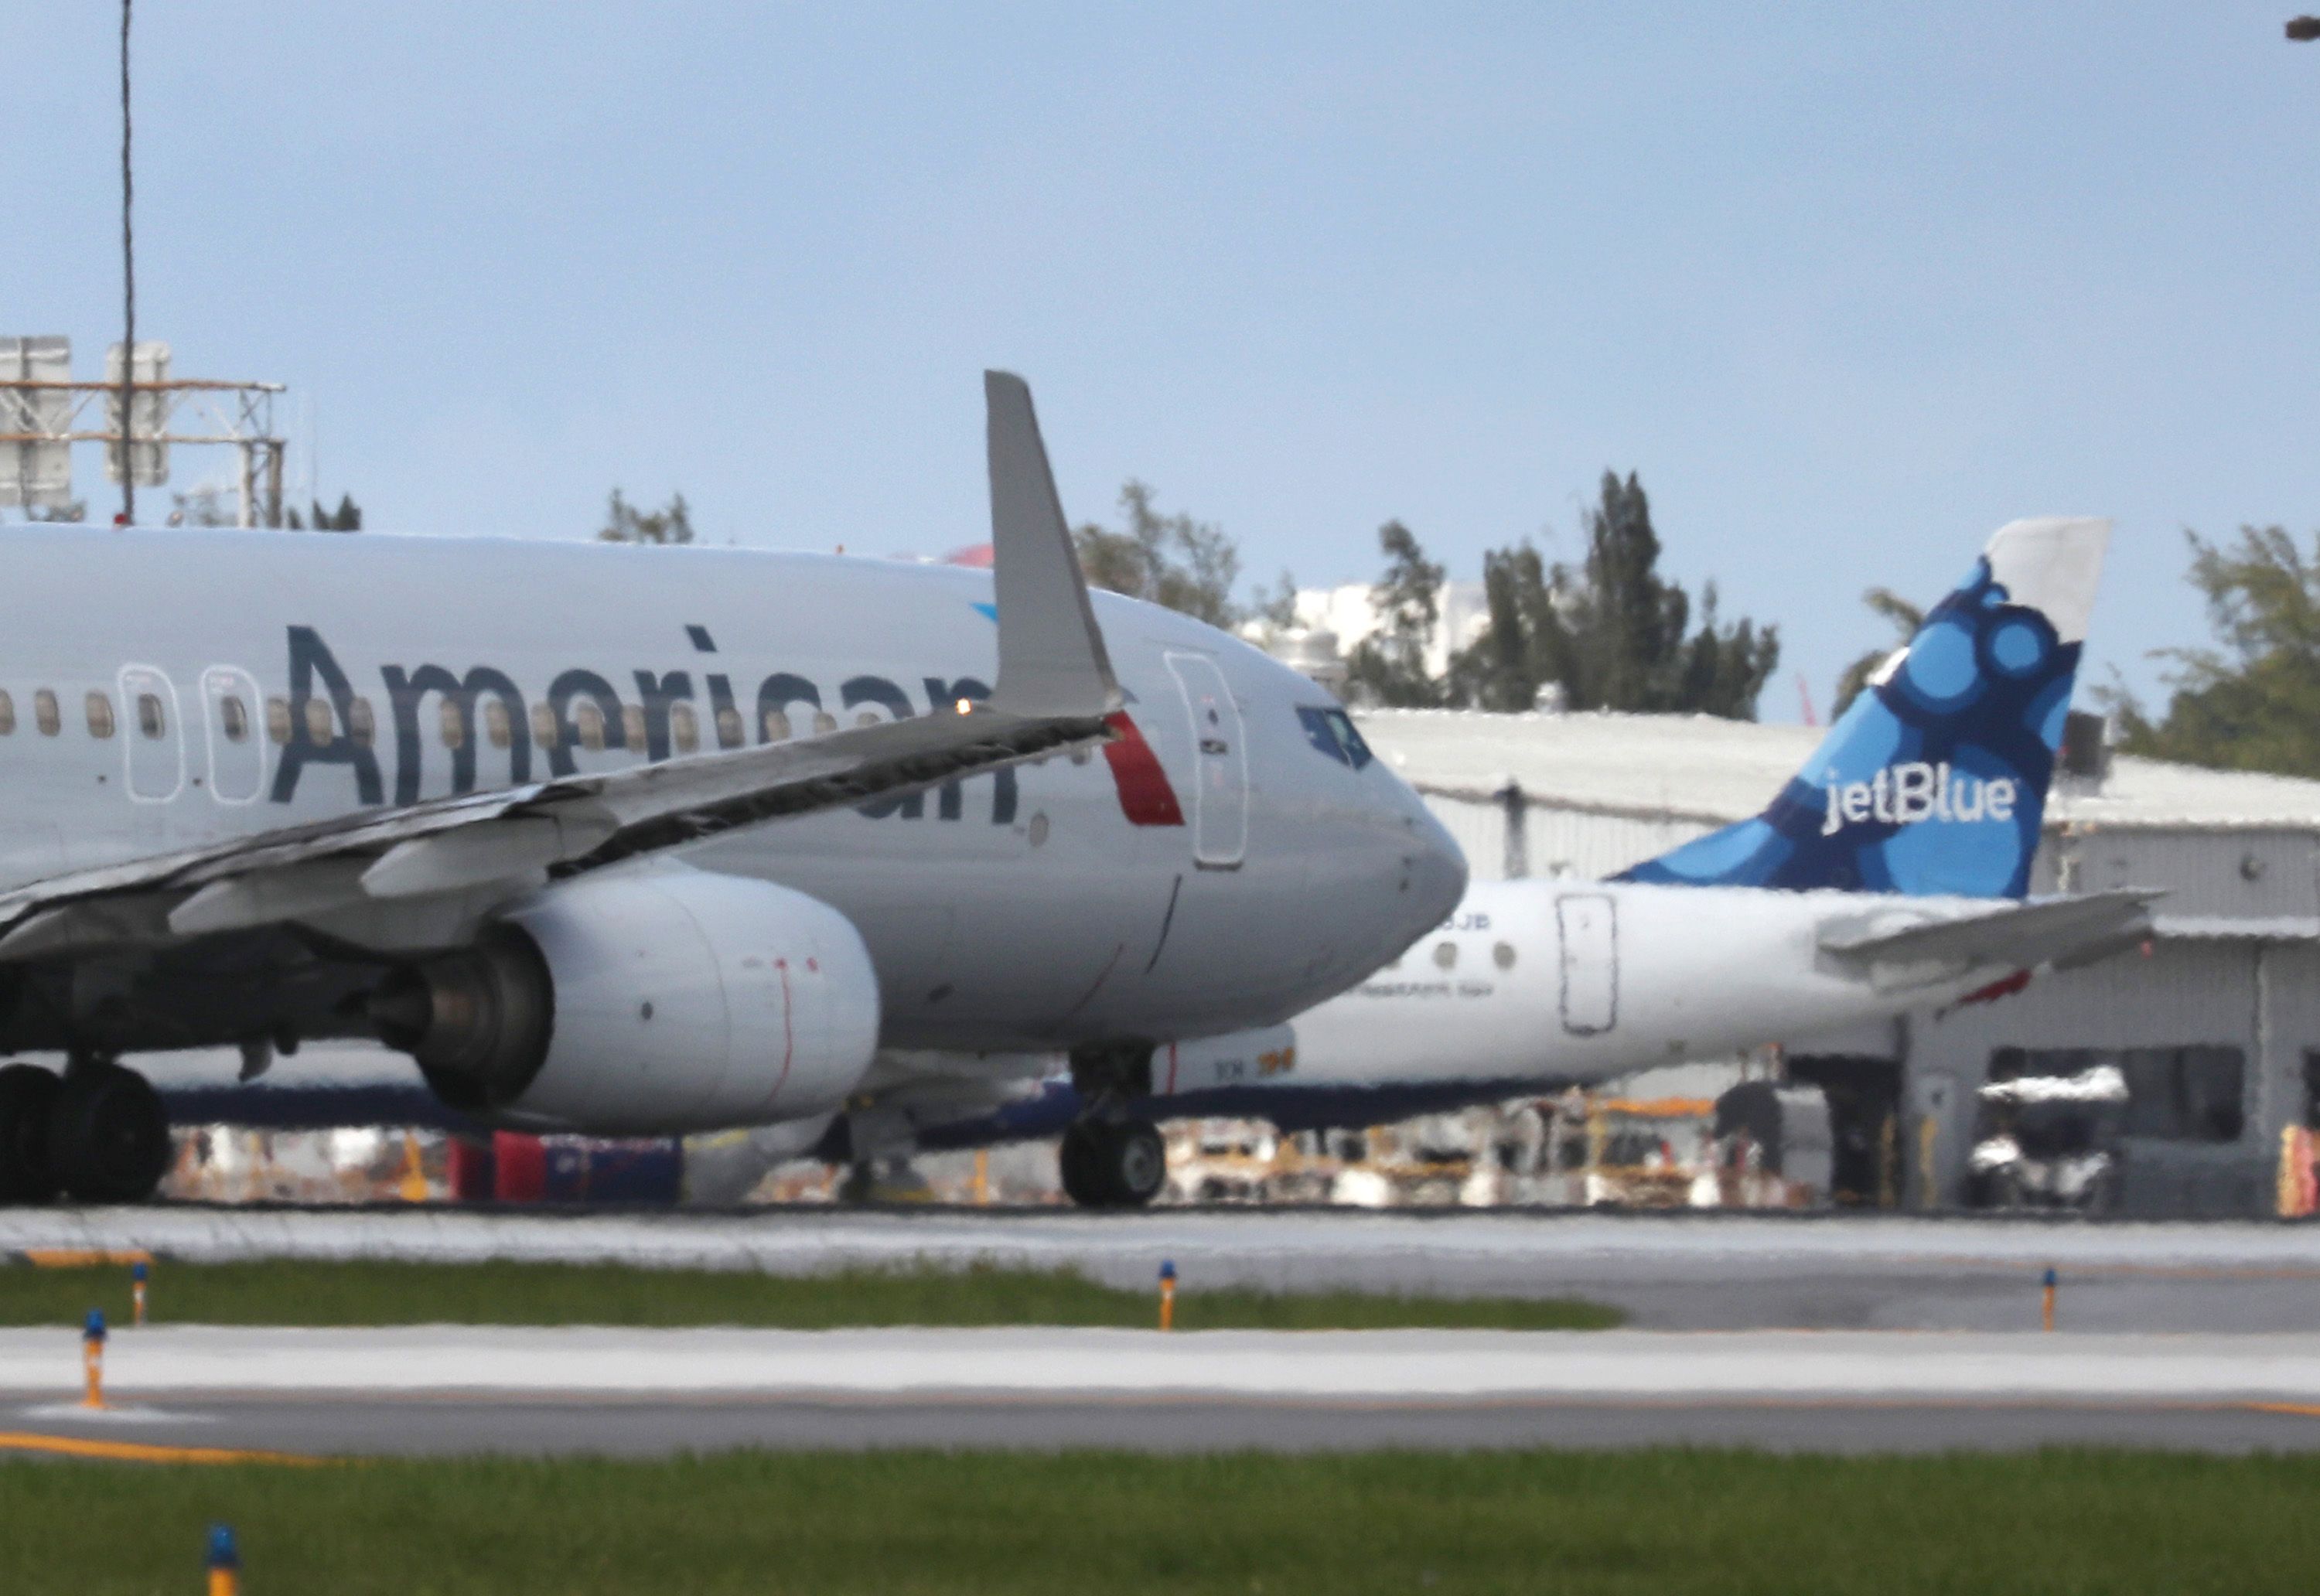 American Airlines JetBlue Airways Planes